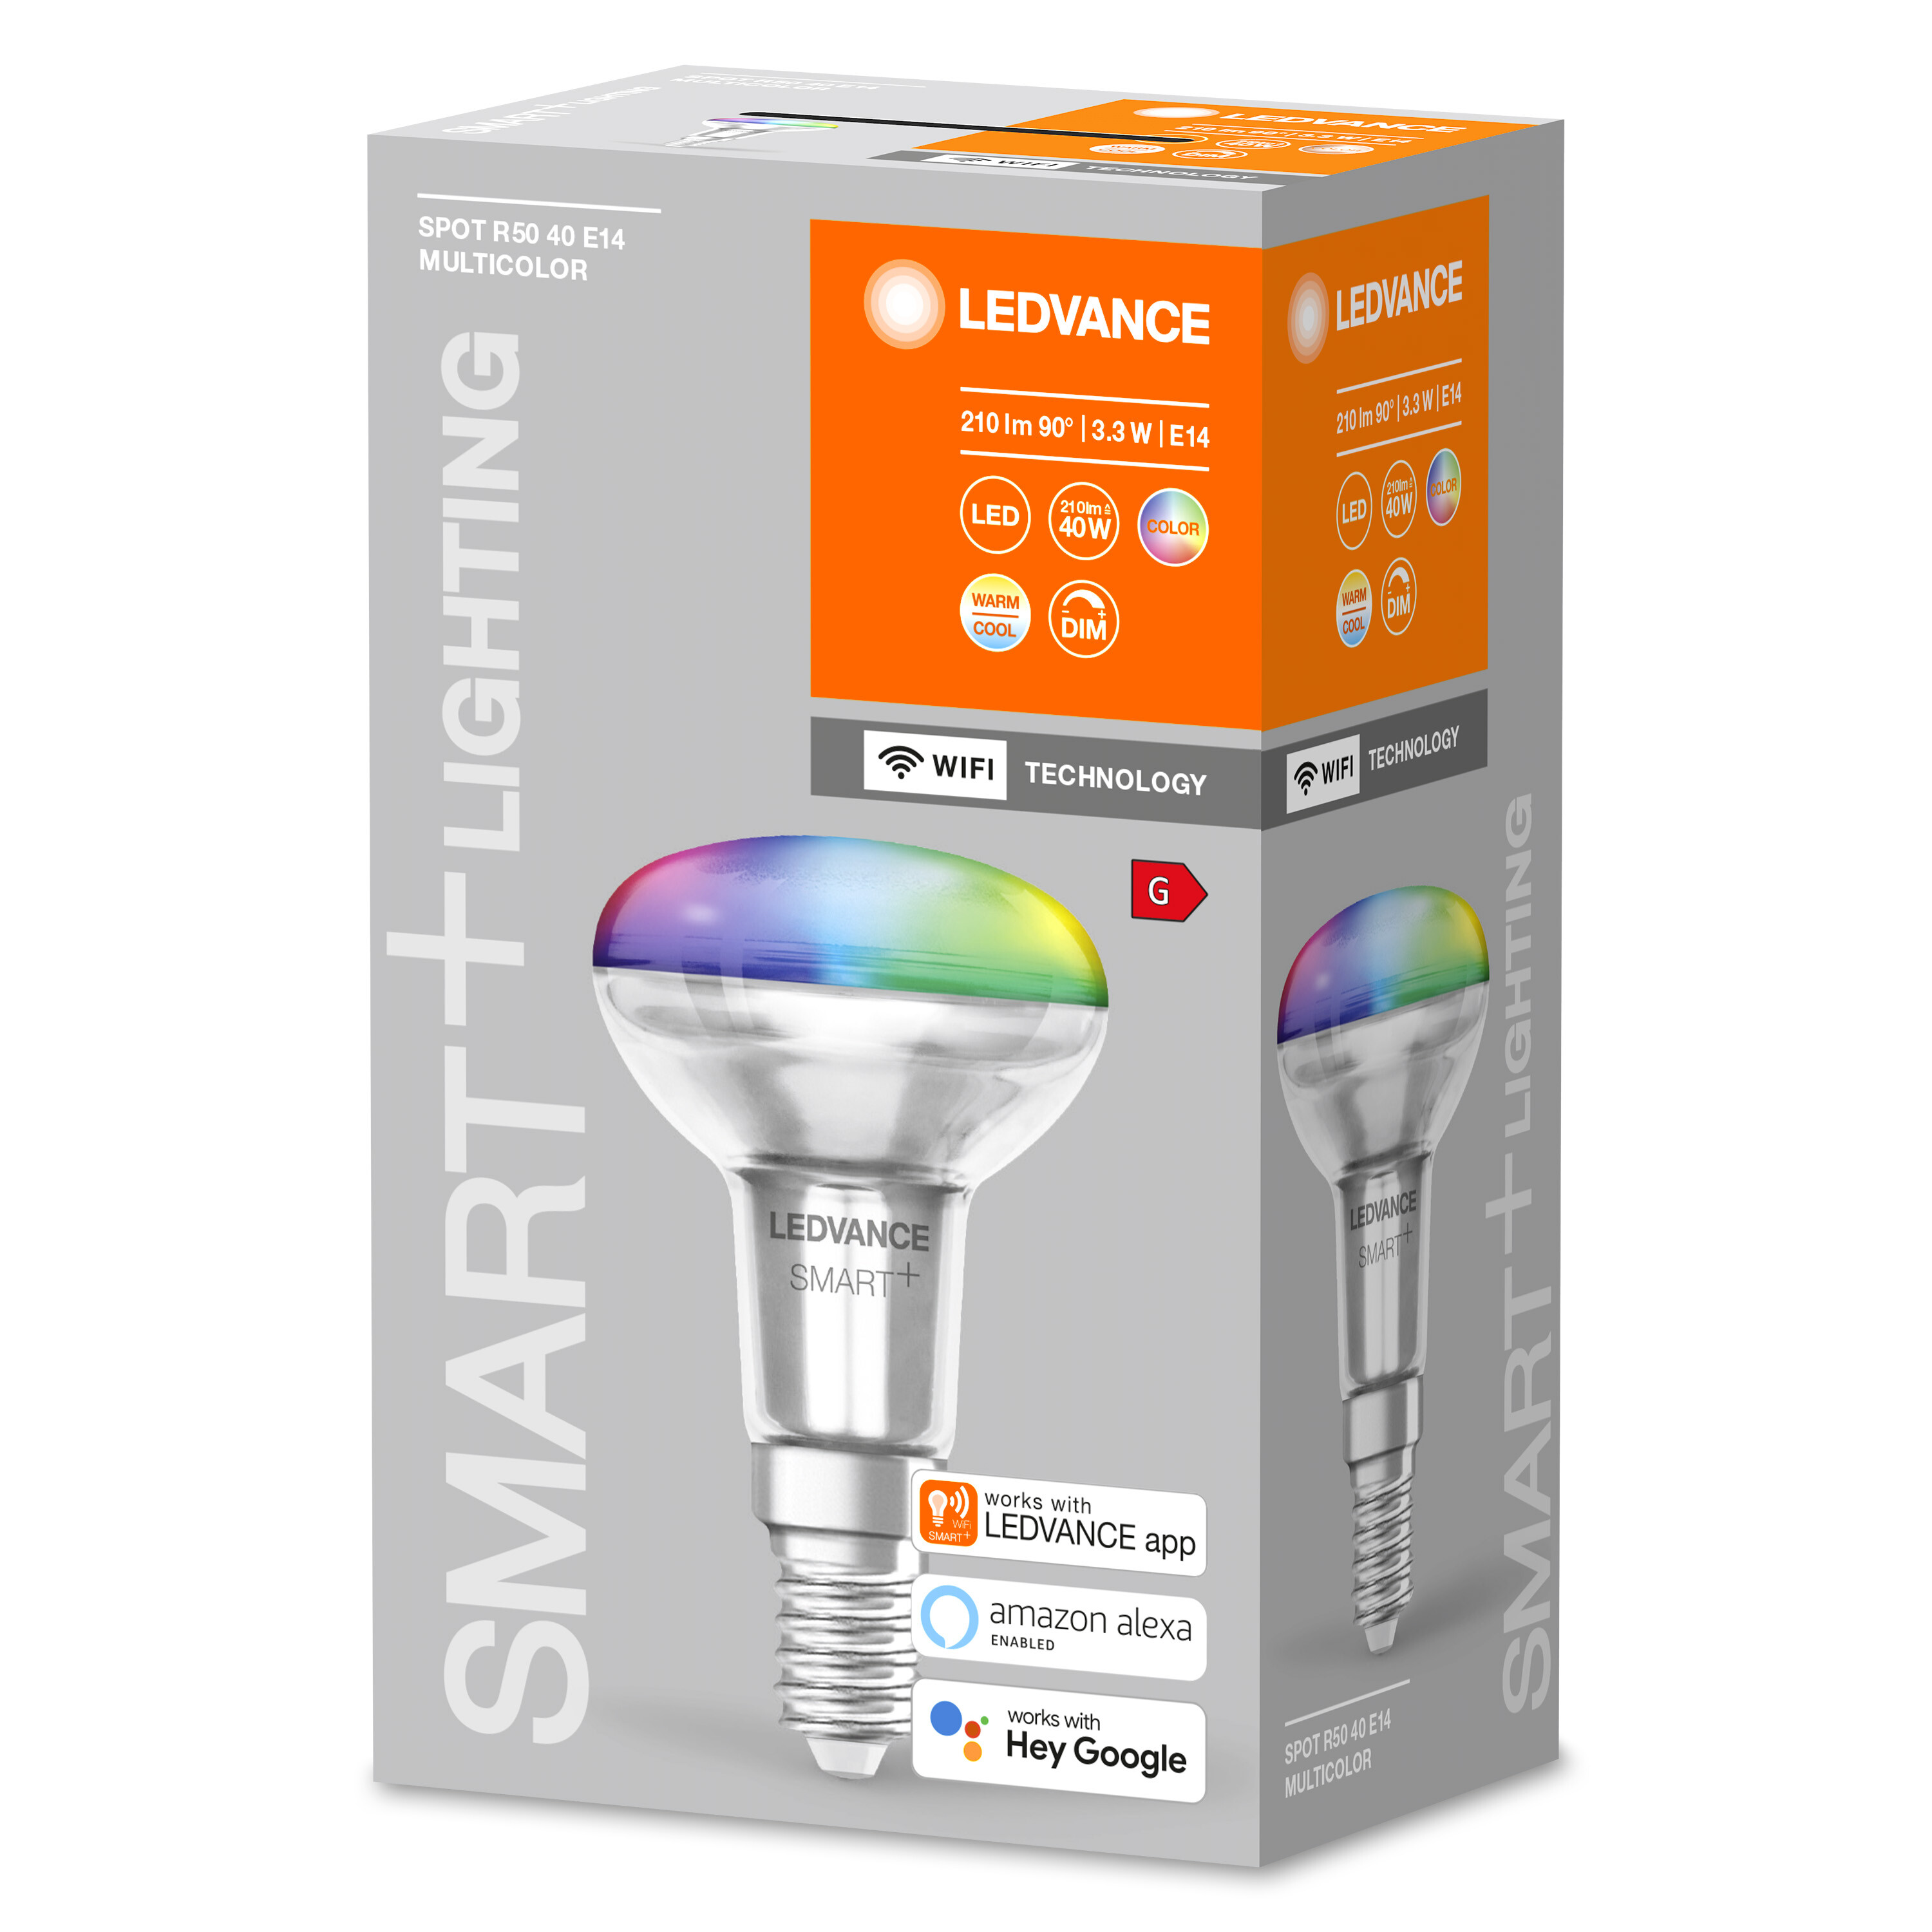 LEDVANCE SMART+ SPOT CONCENTRA Multicolor Lampe 3W R50 40 änderbar E14 LED Multicolor Lichtfarbe